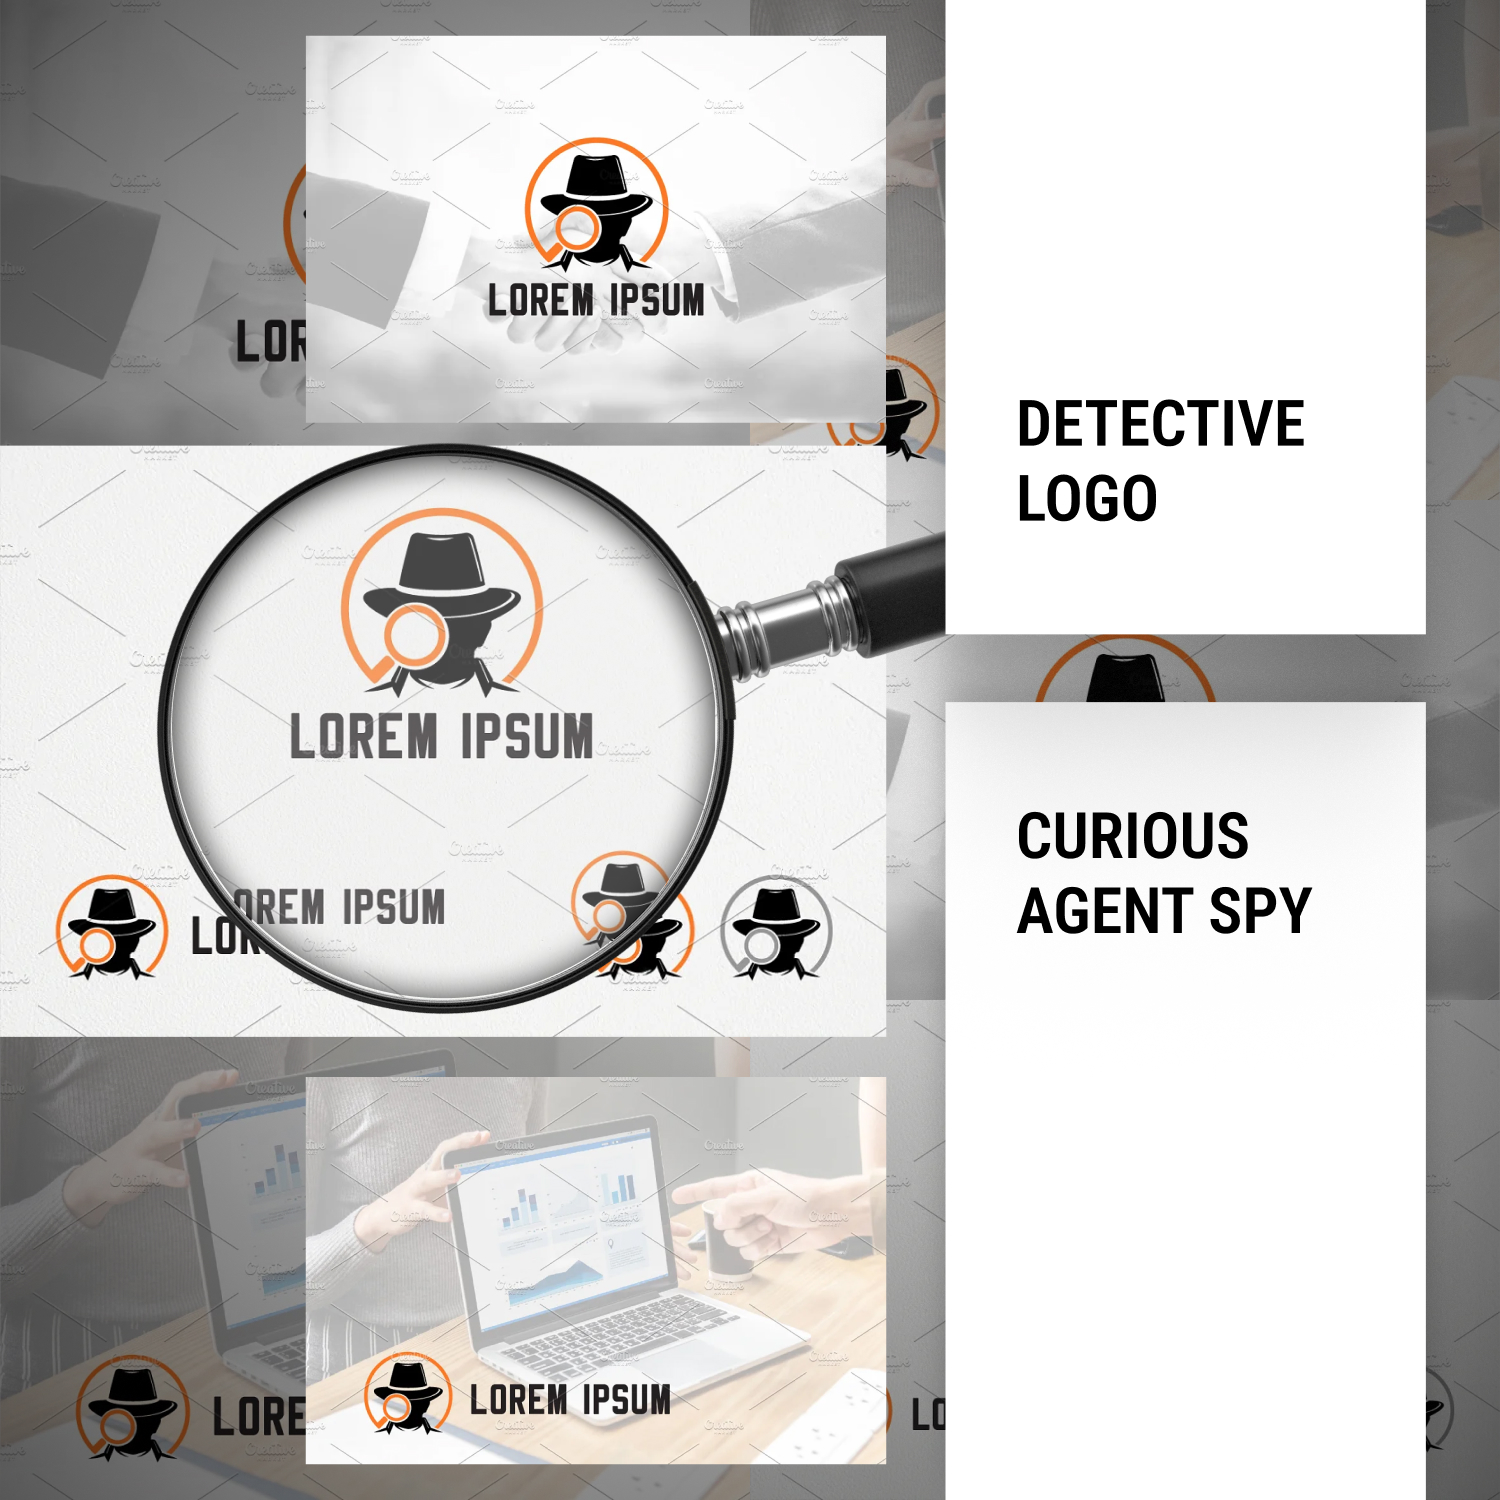 Curious Agent Spy Detective Logo.